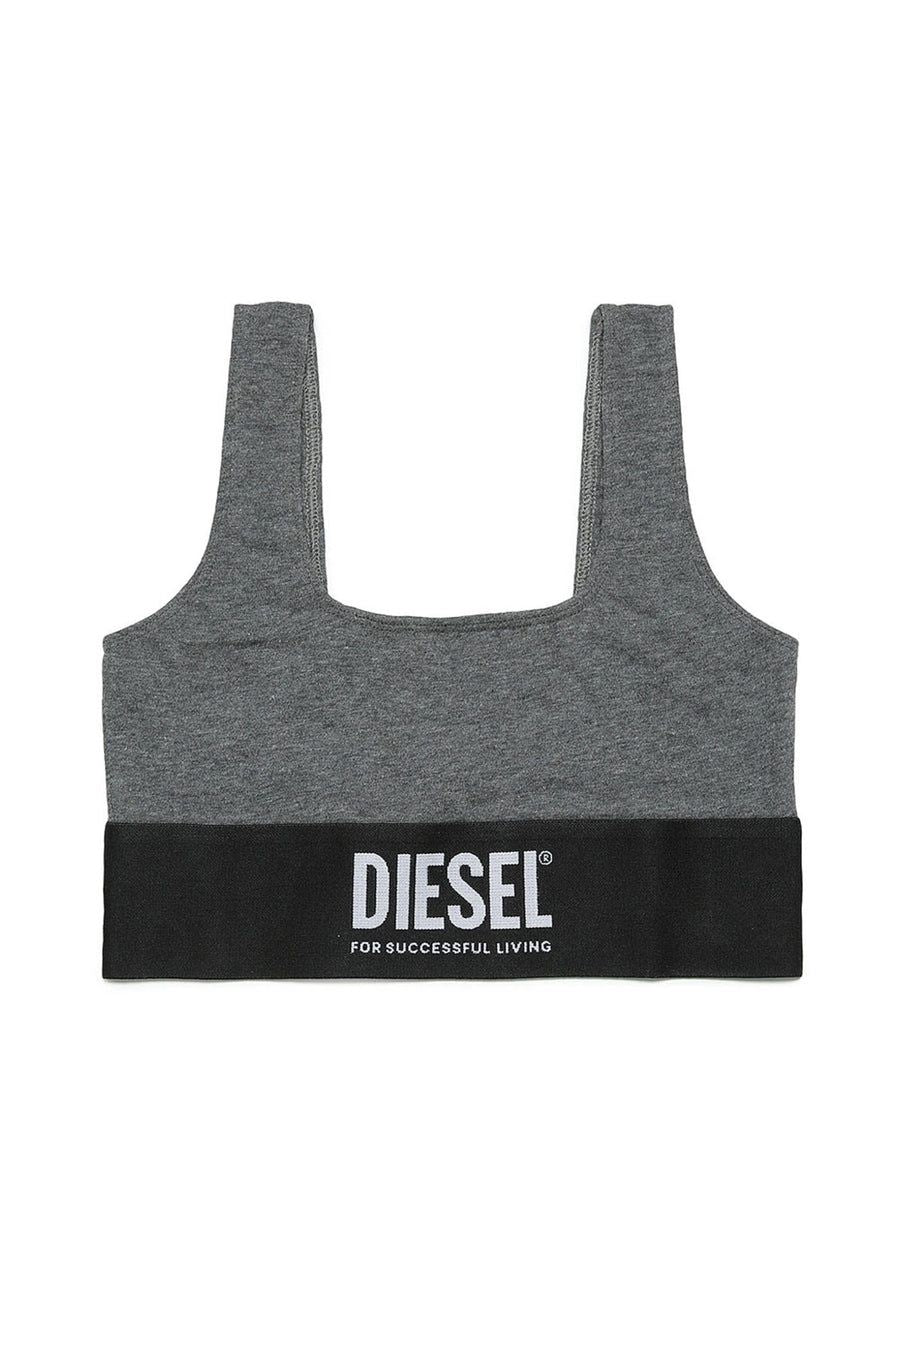 Diesel reggiseno grigio nero J01018